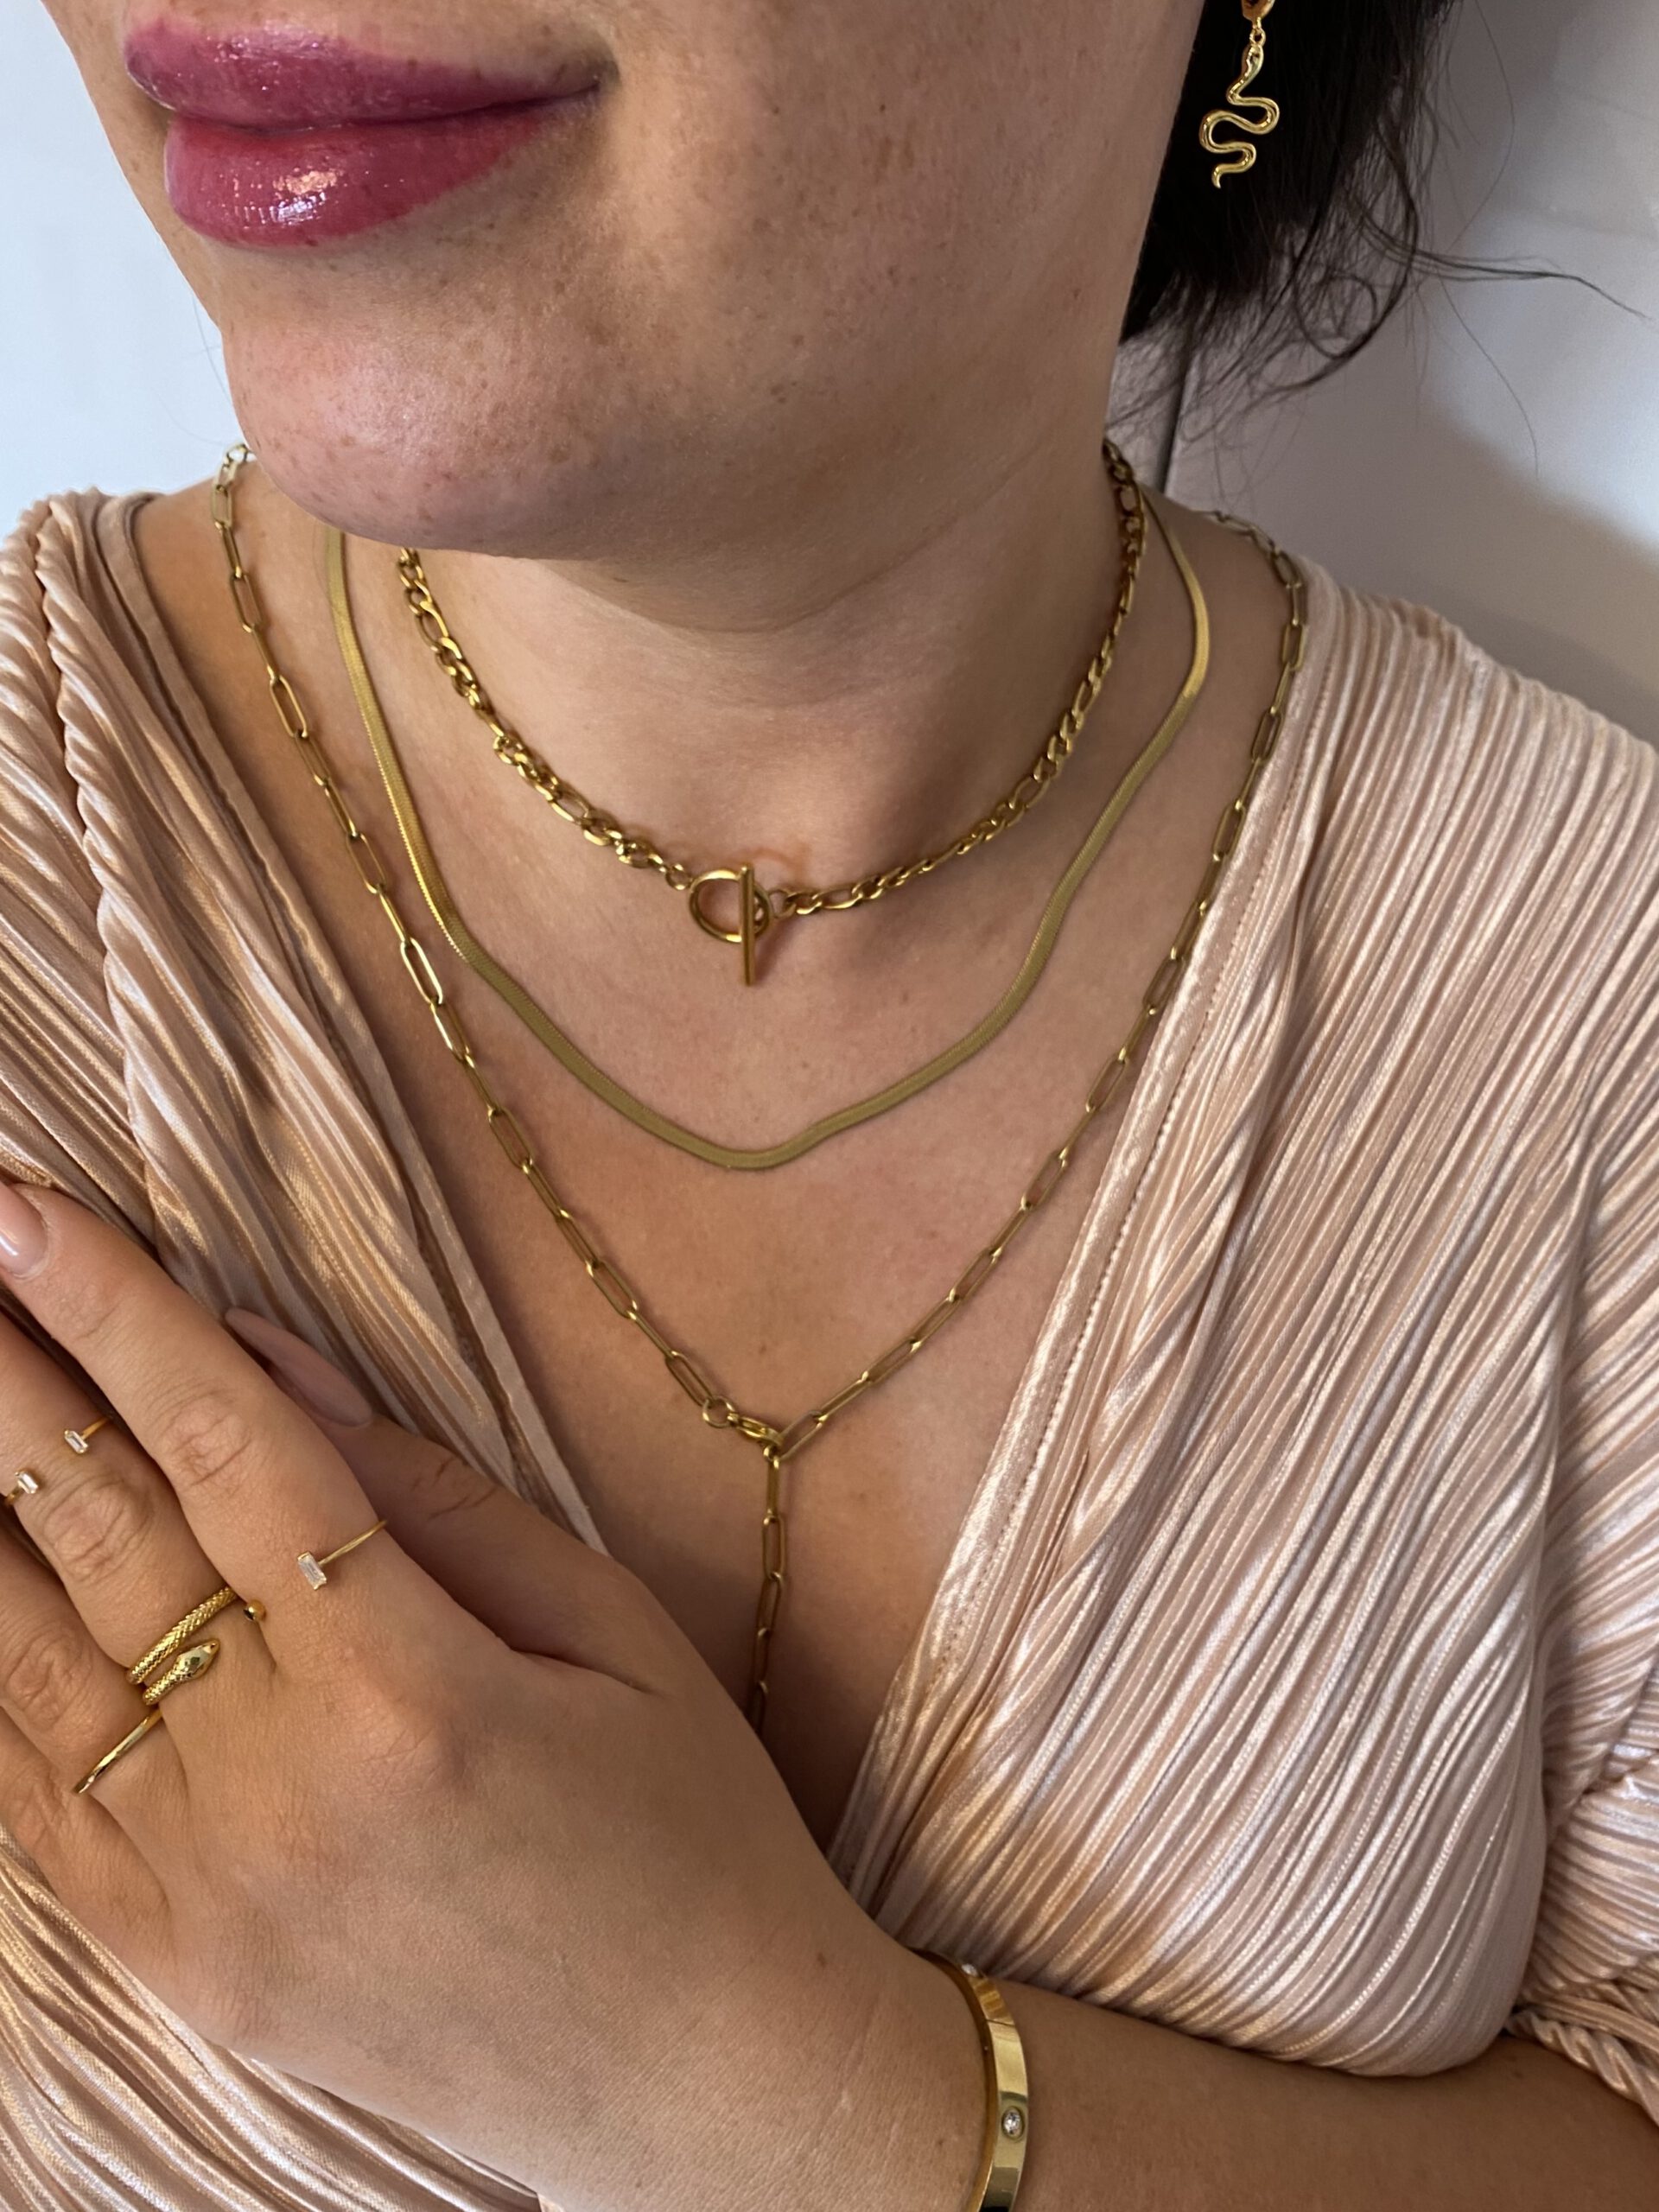 Snake Chain Experte High für – Beauty Ihr Necklace Produkte